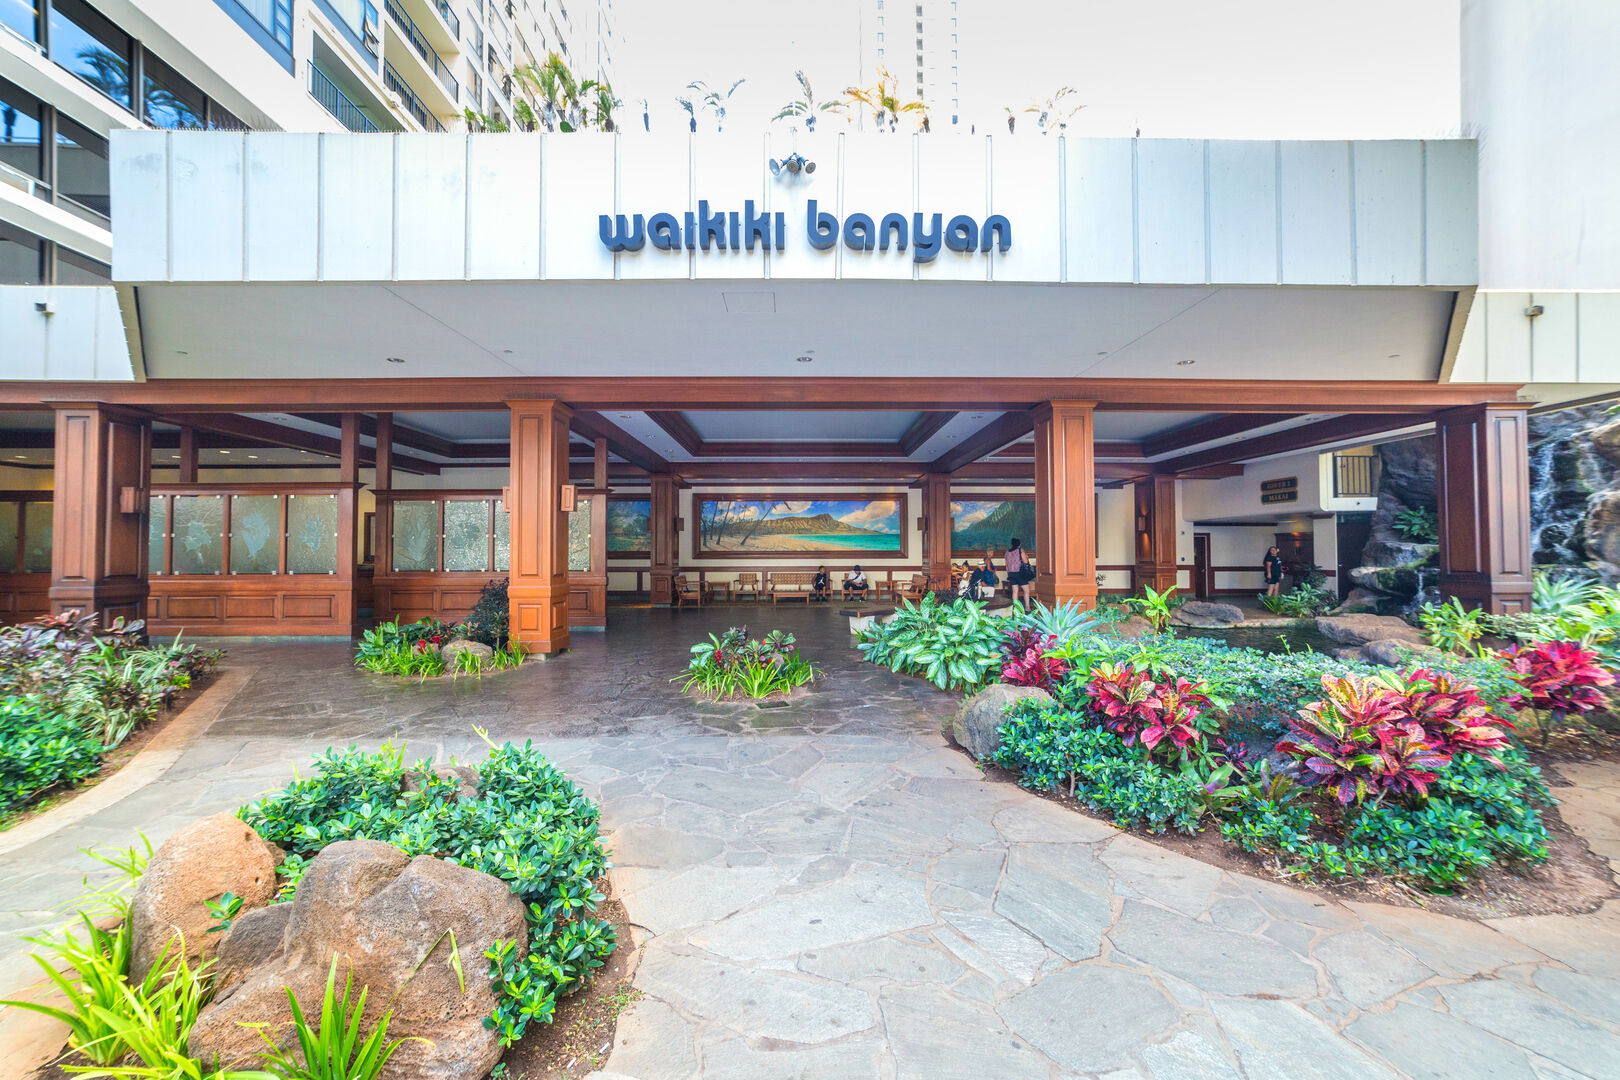 Entrance to the Waikiki Banyan